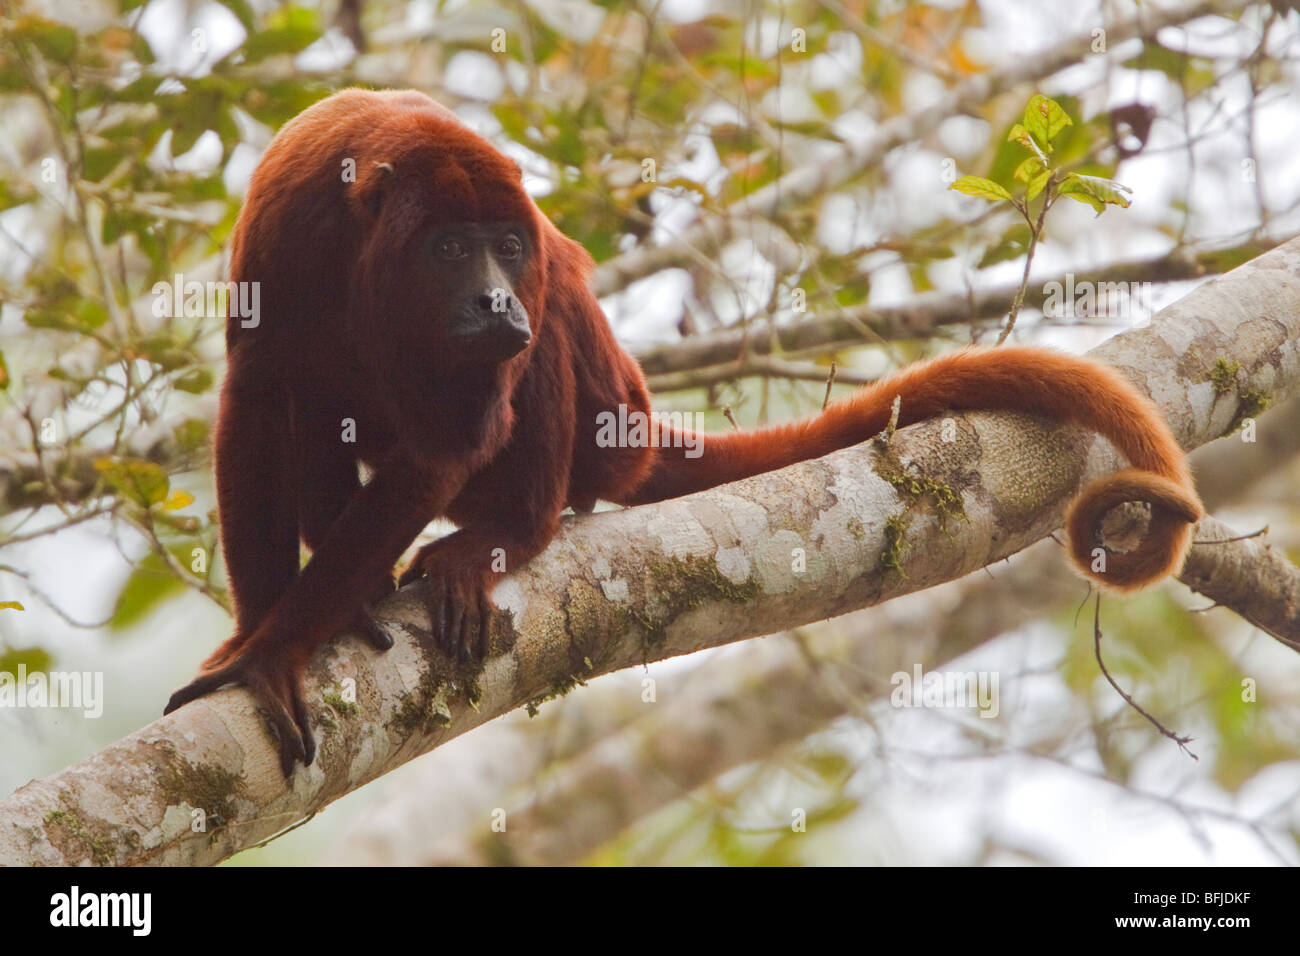 Una scimmia appollaiata in una struttura ad albero amazzonica in Ecuador. Foto Stock